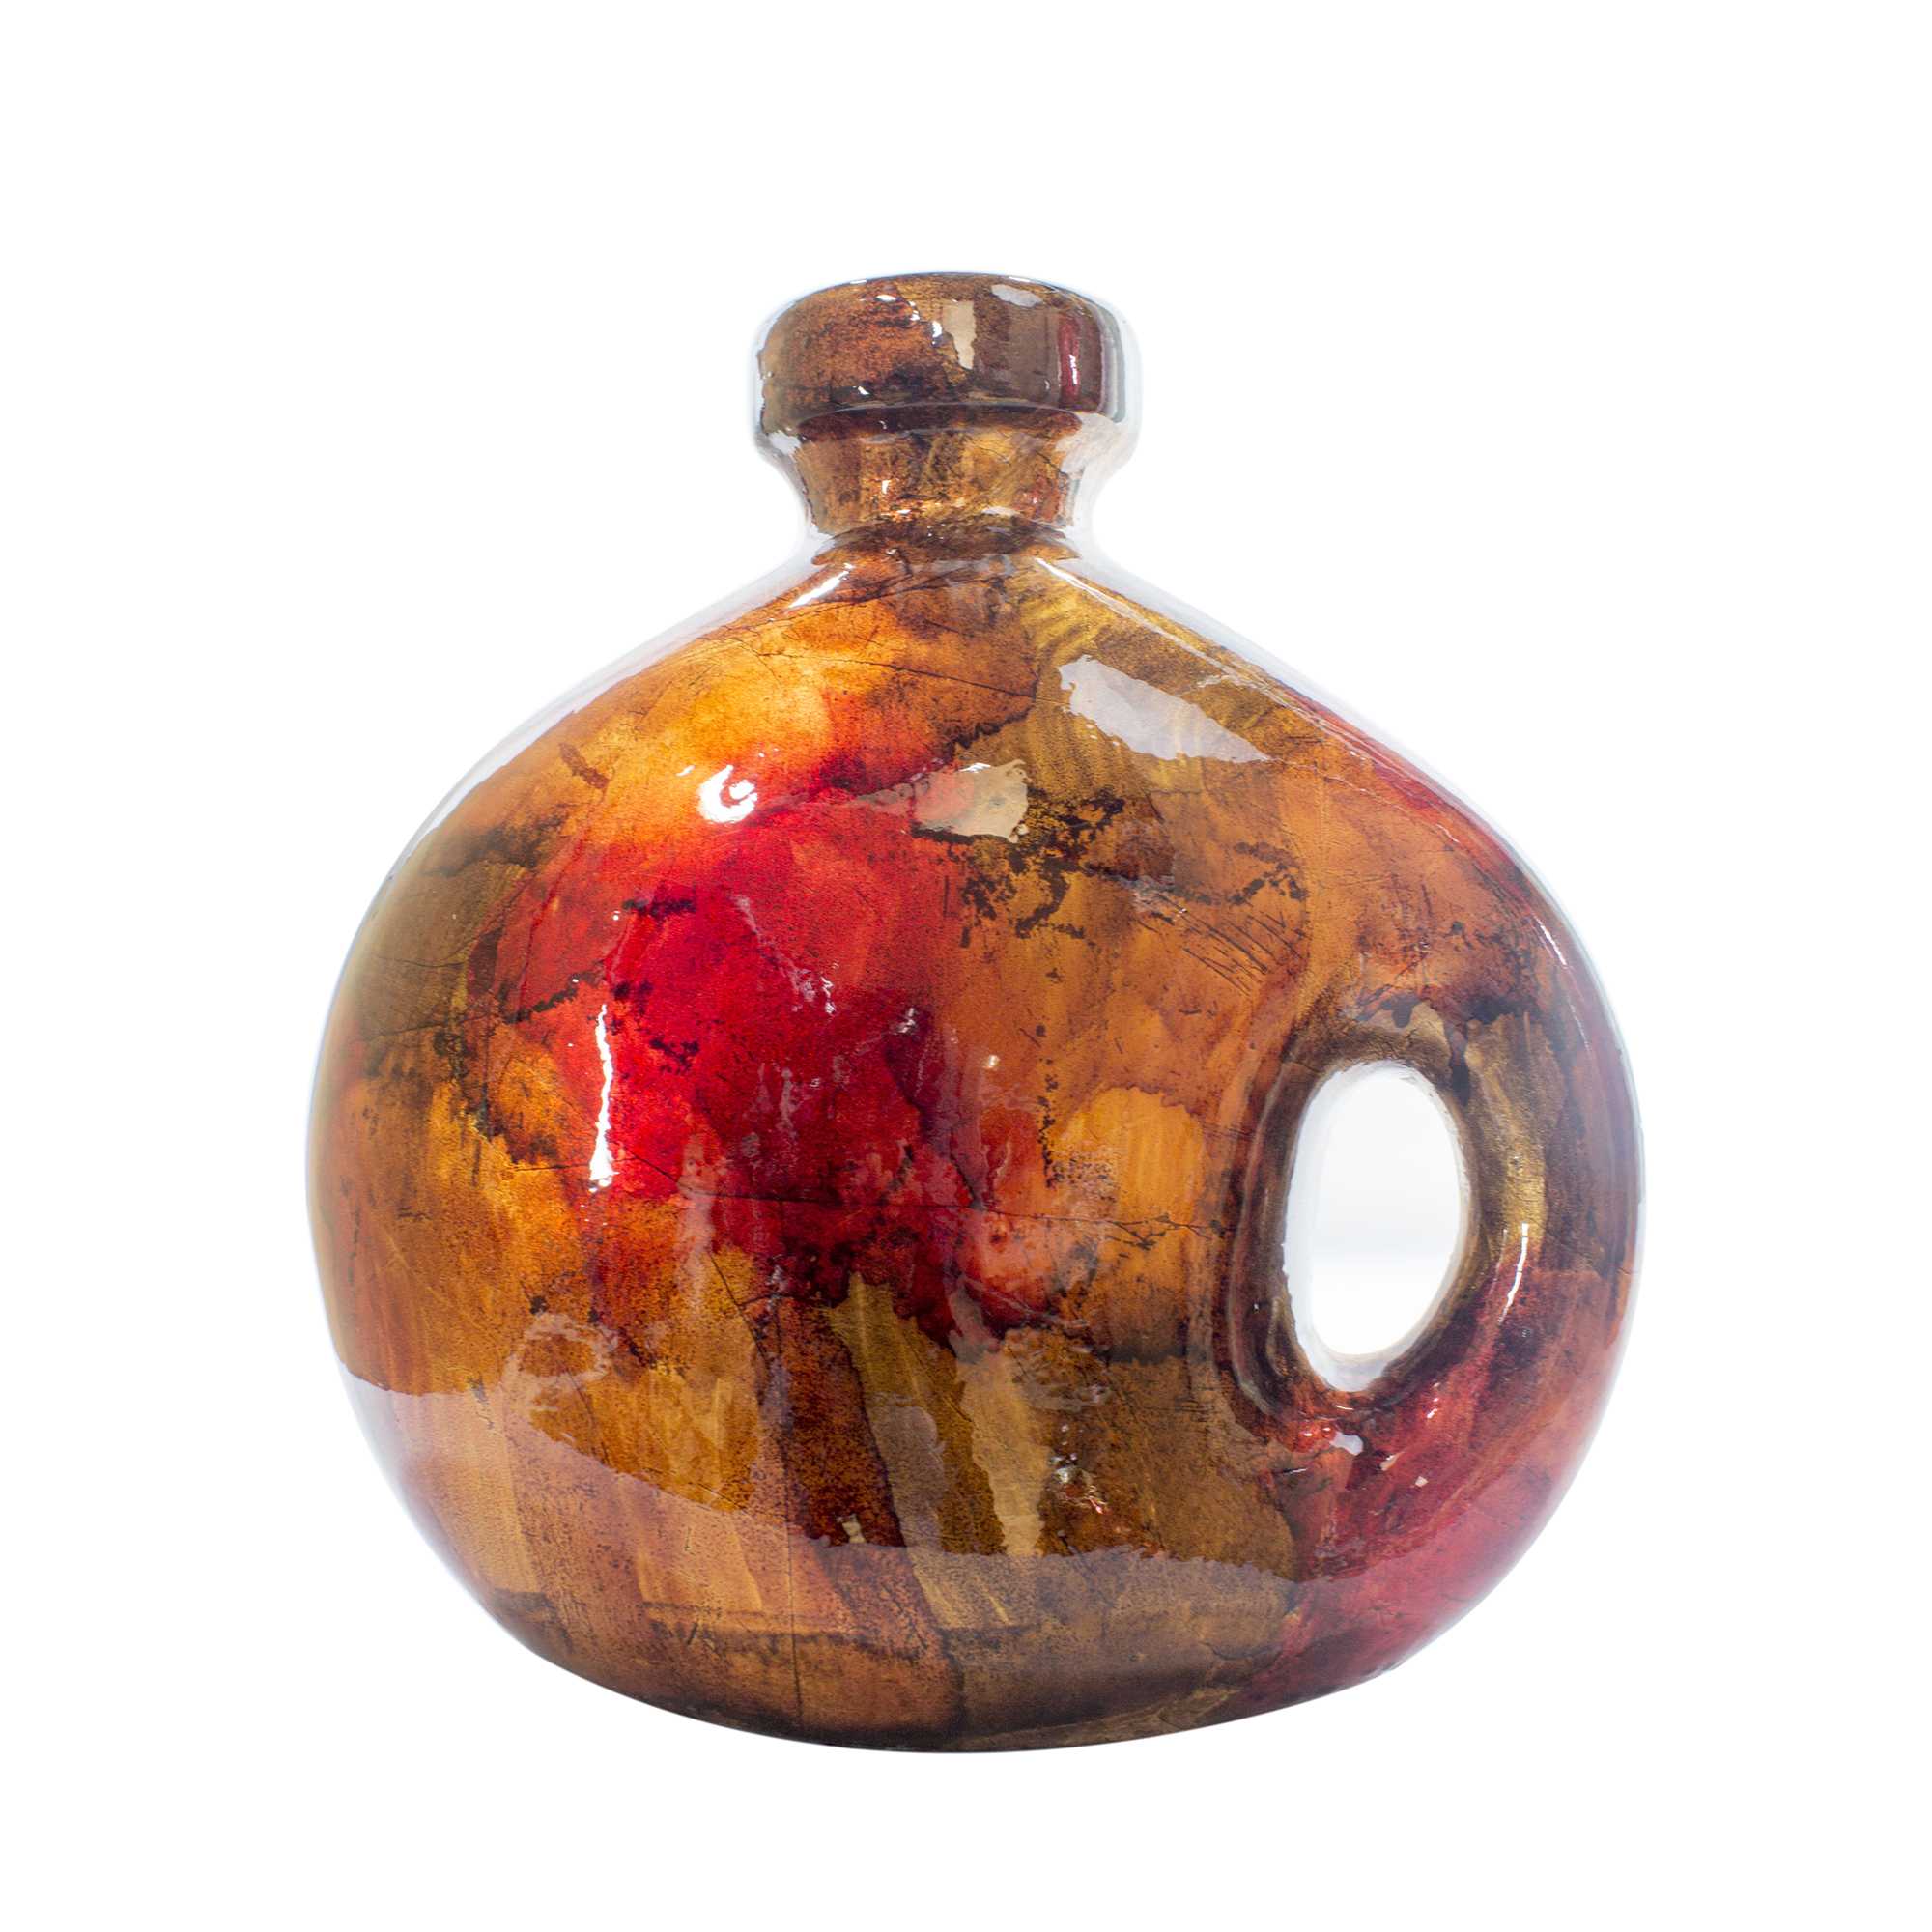 9.75" X 4" X 10.25" Copper Red Gold Ceramic Jug Vase